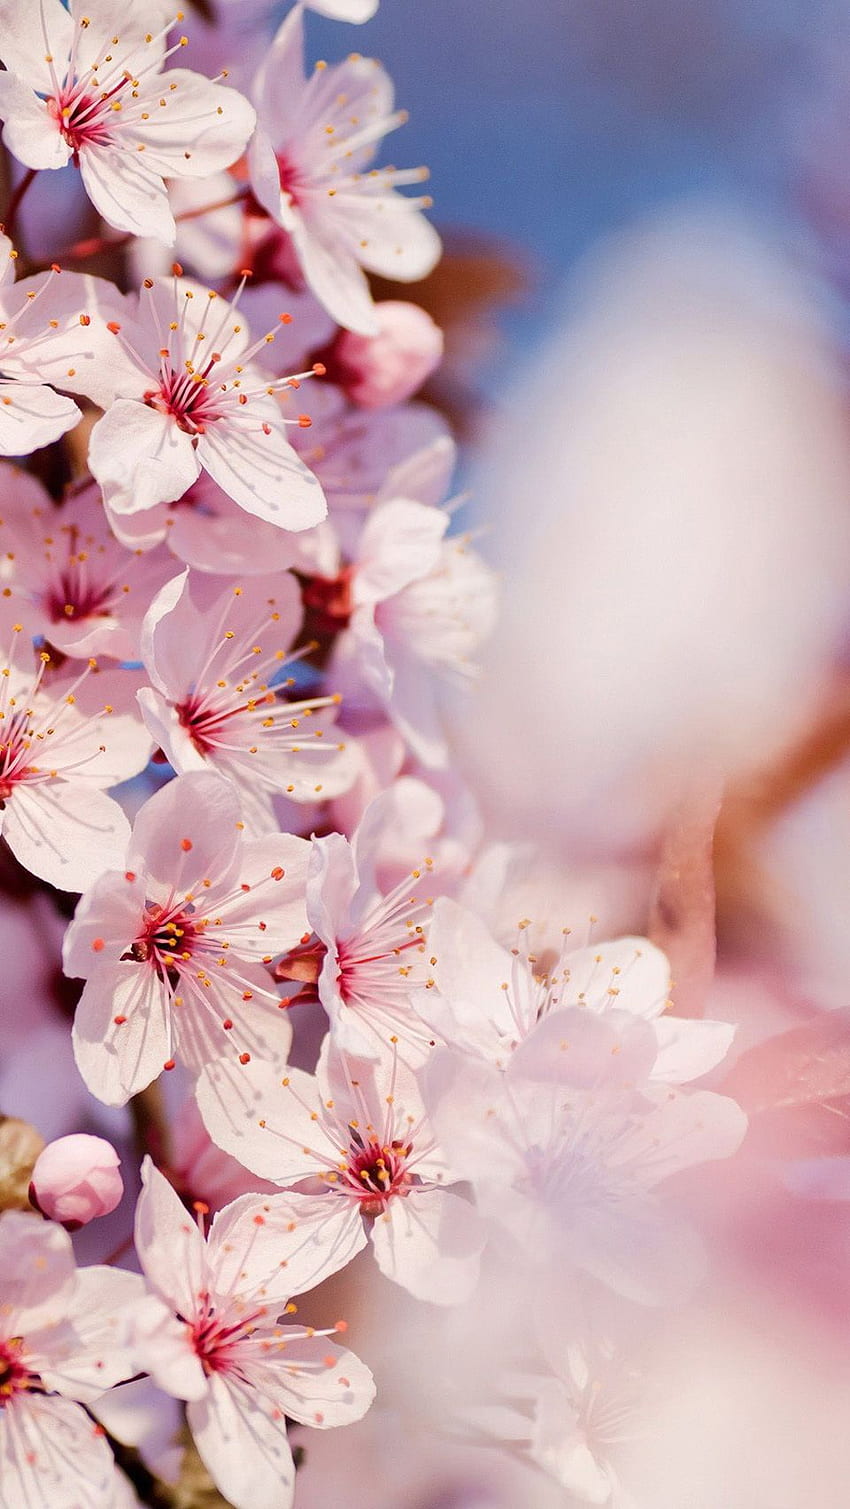 iPhone 6 Cherry Blossom 968 Full, fiore di ciliegio giapponese Sfondo del telefono HD